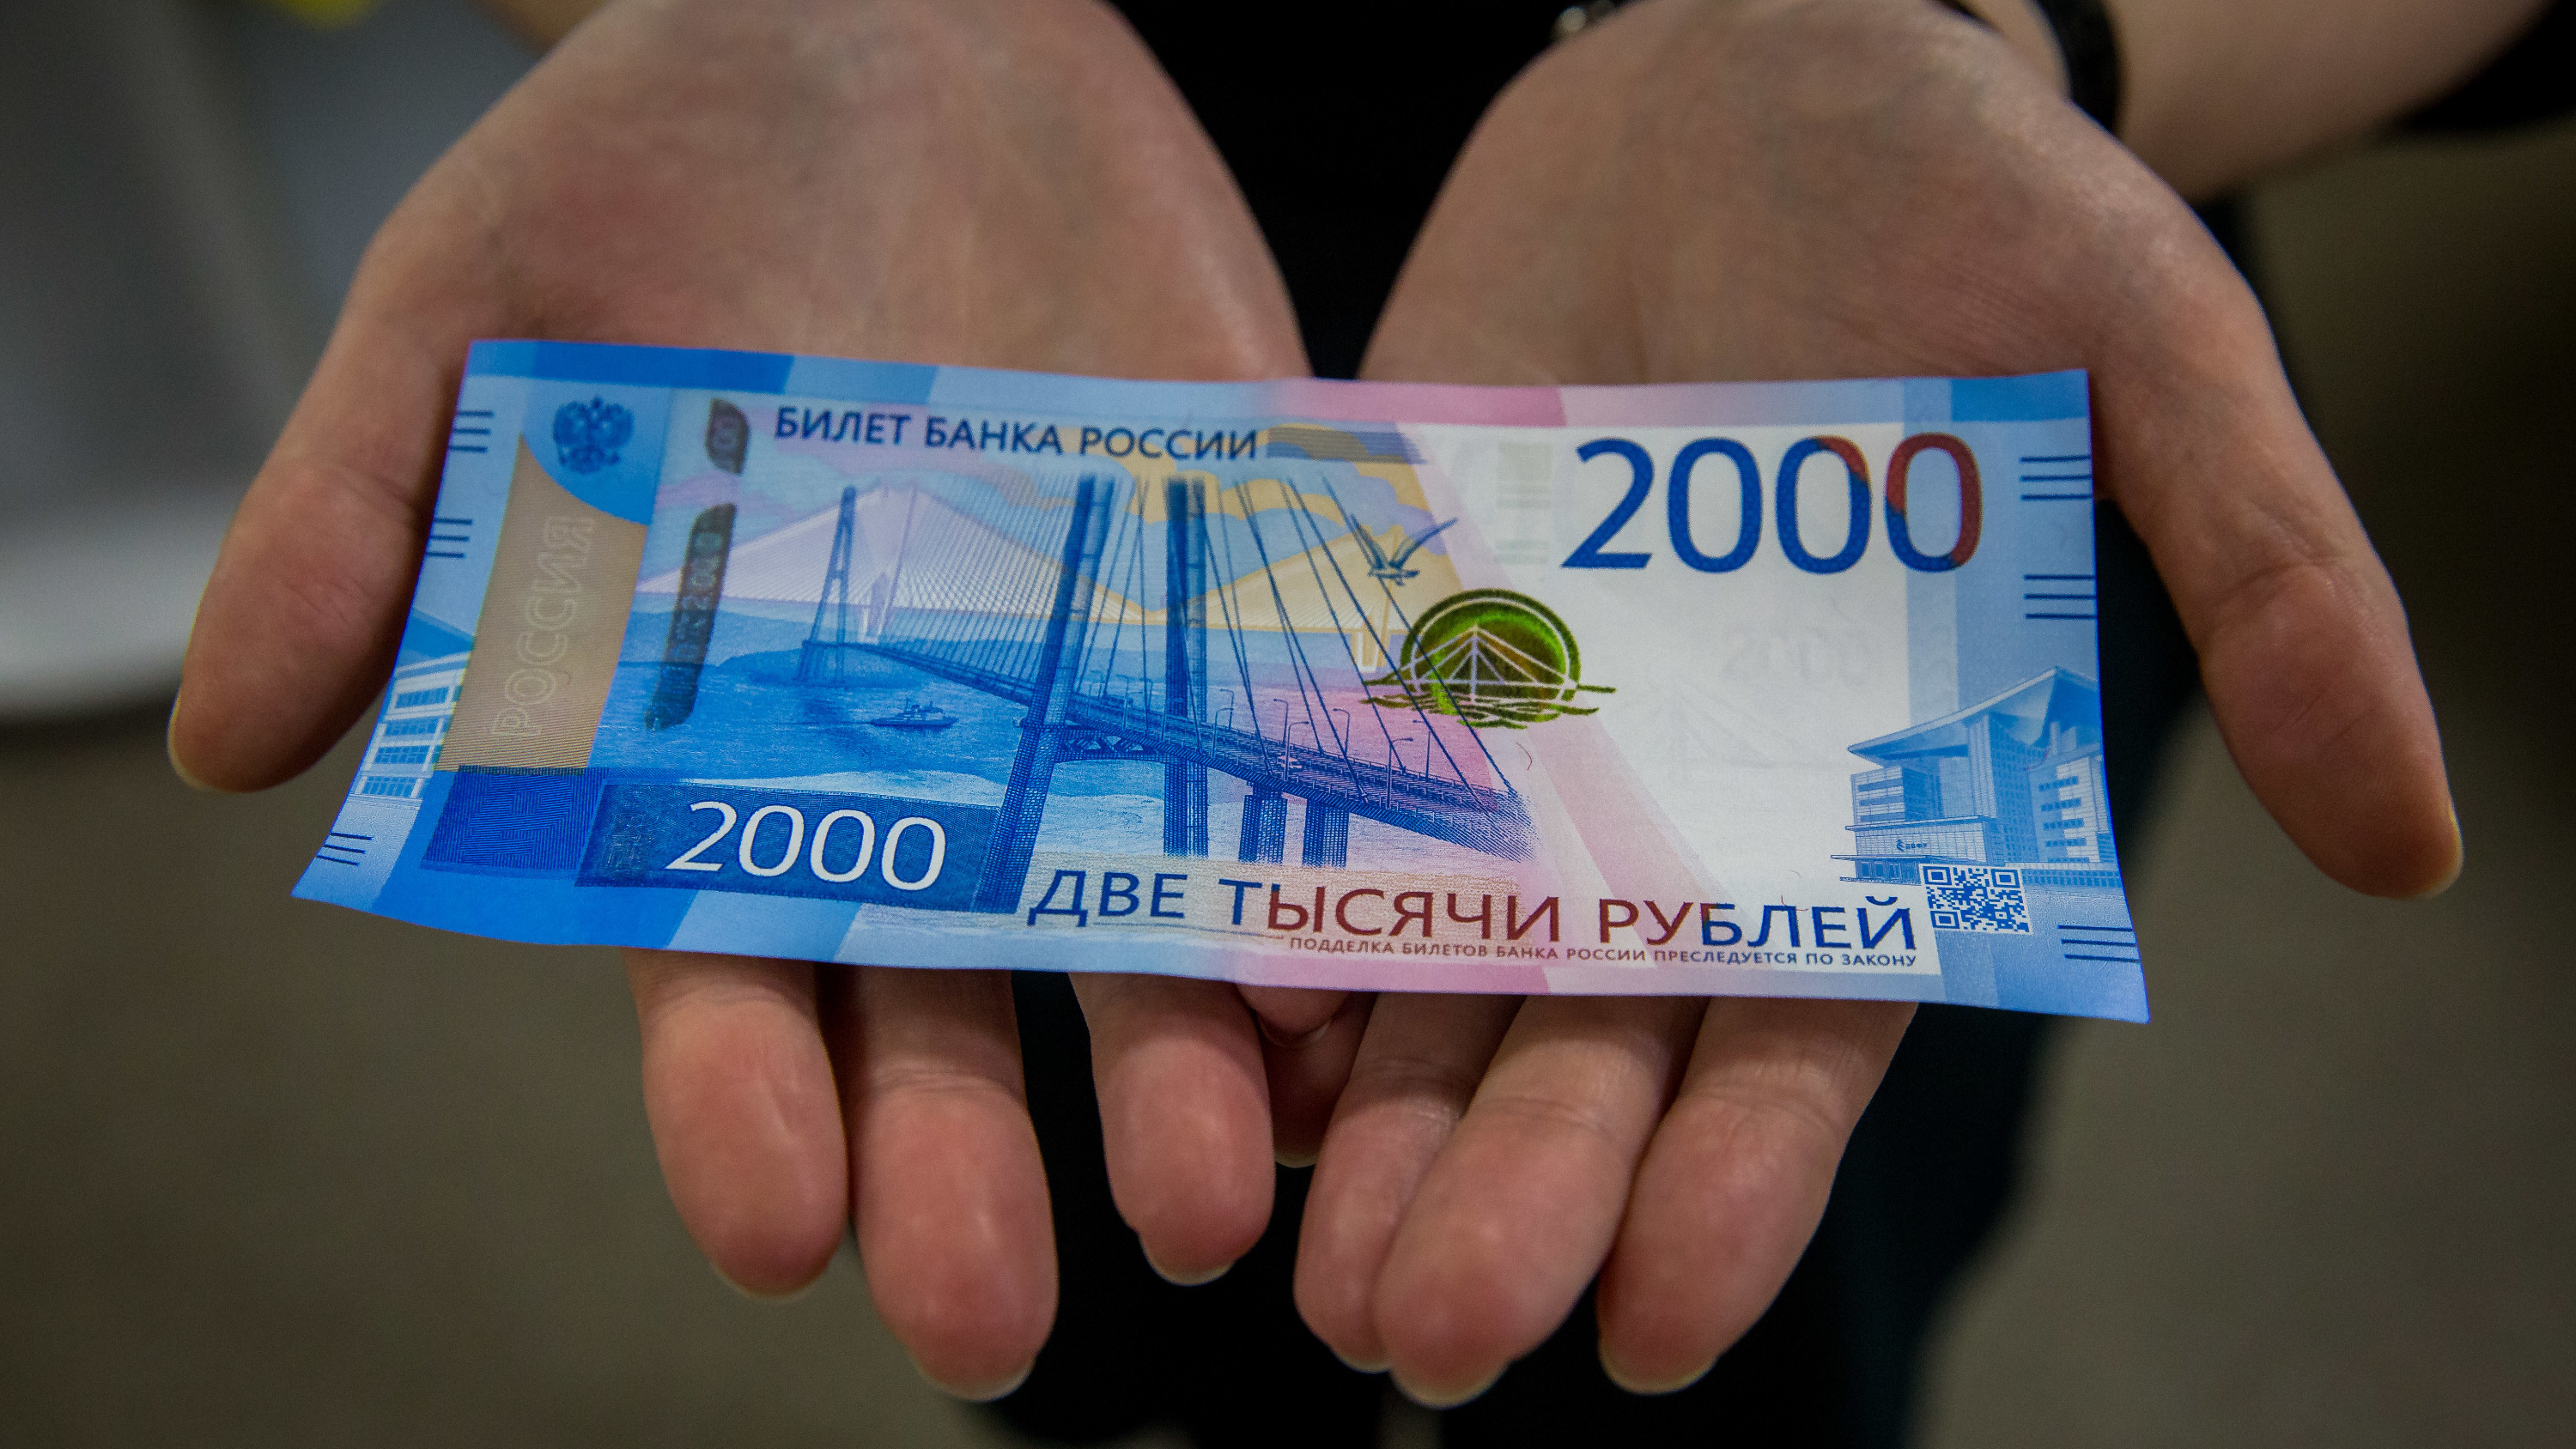 2000 рублей на карту. 2000 Рублей. Купюра 2000 рублей. Две тысячи рублей. 2 Тысячи рублей.